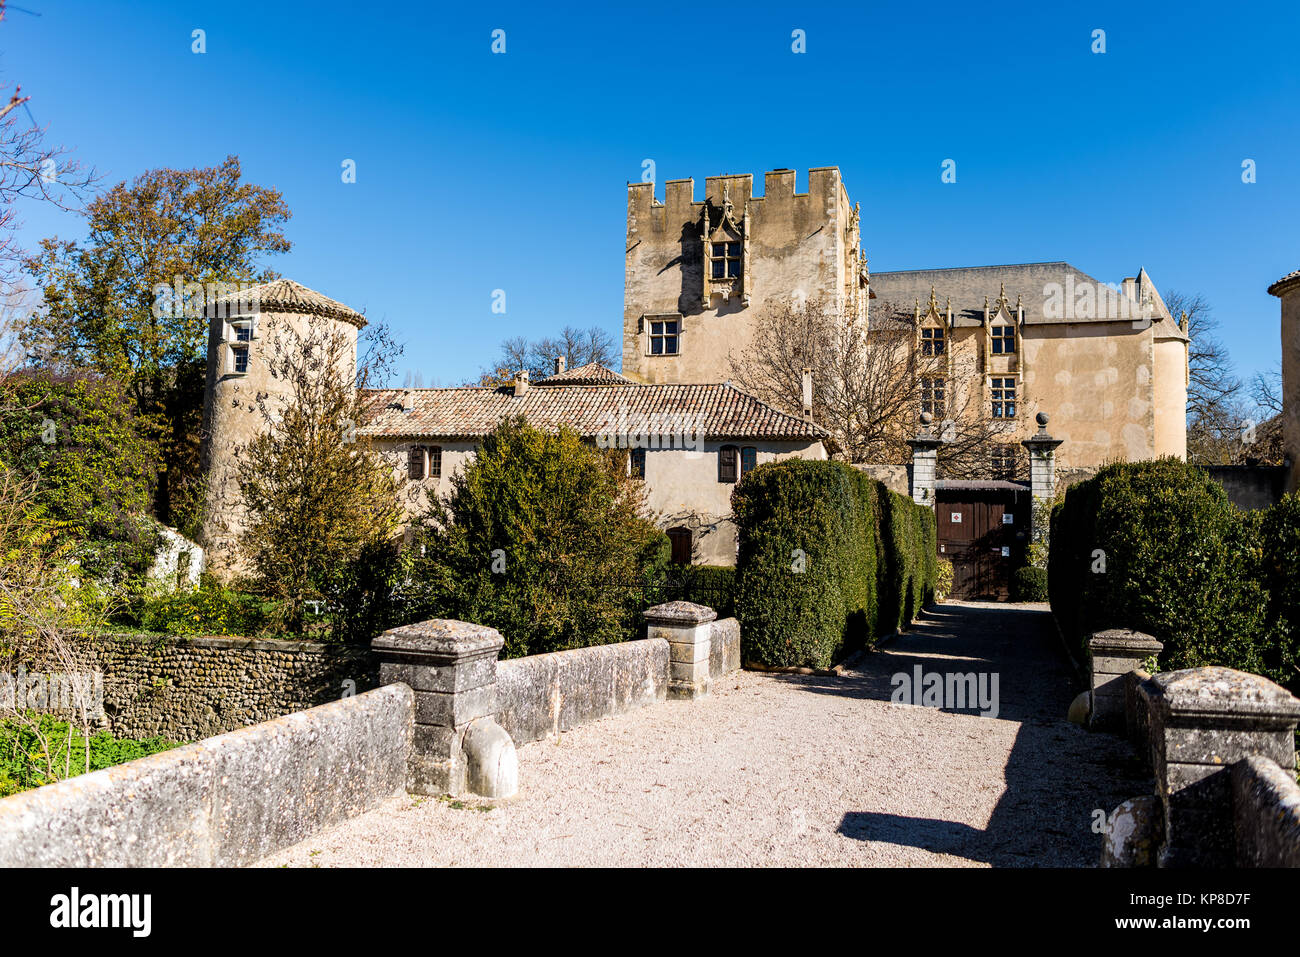 Chateau Allemagne en Provence Foto de stock